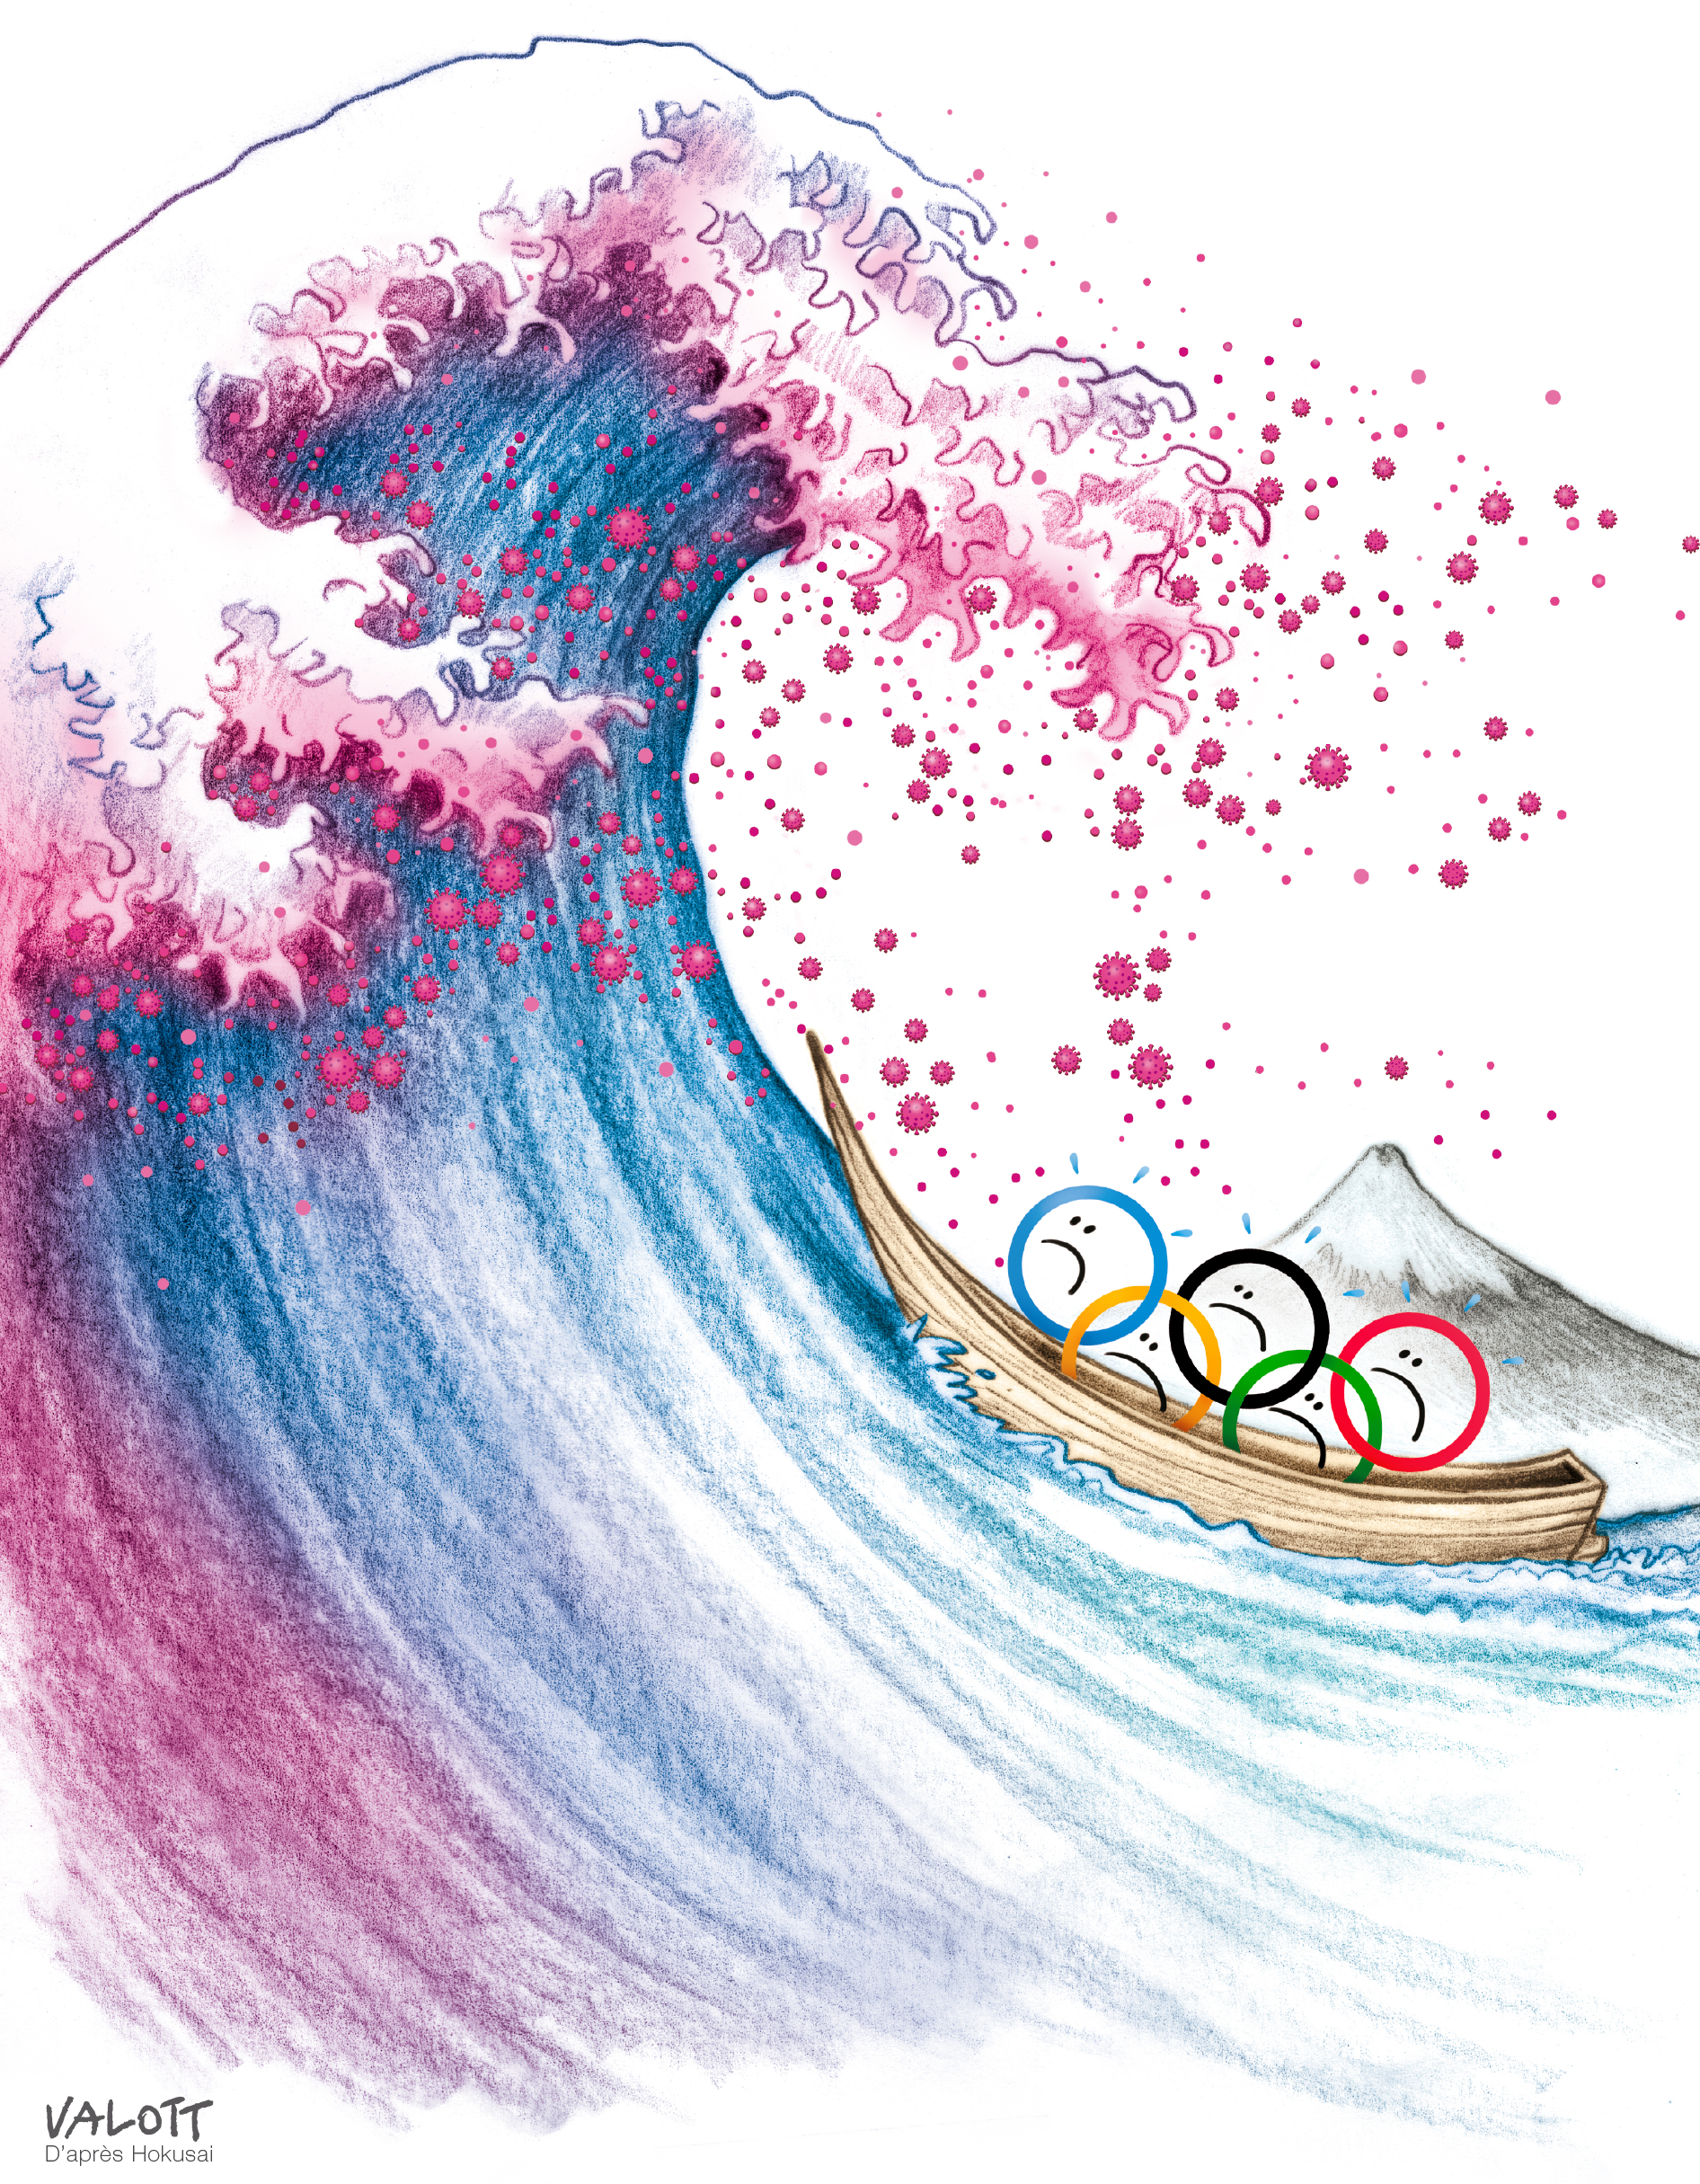 Una ola enorme amenaza a una balsa con los aros olímpicos